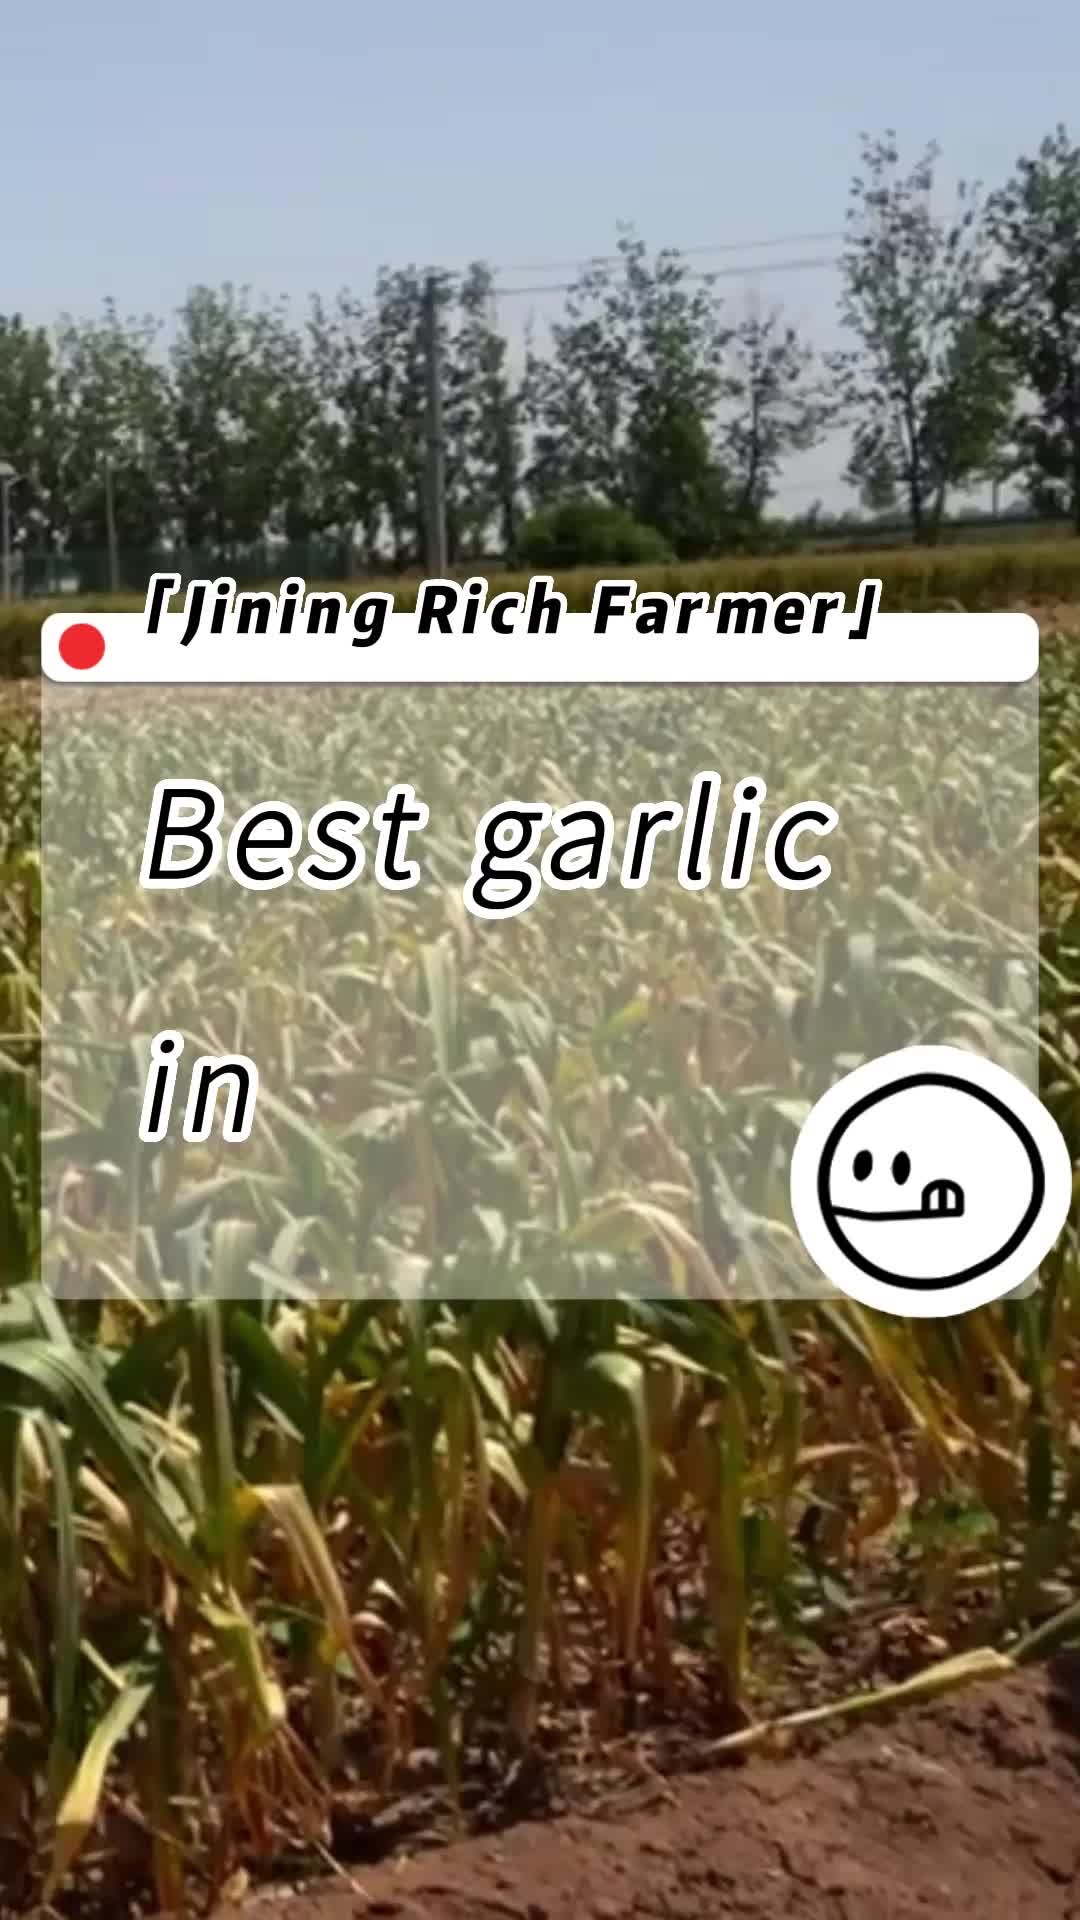 Jinxiang Garlic